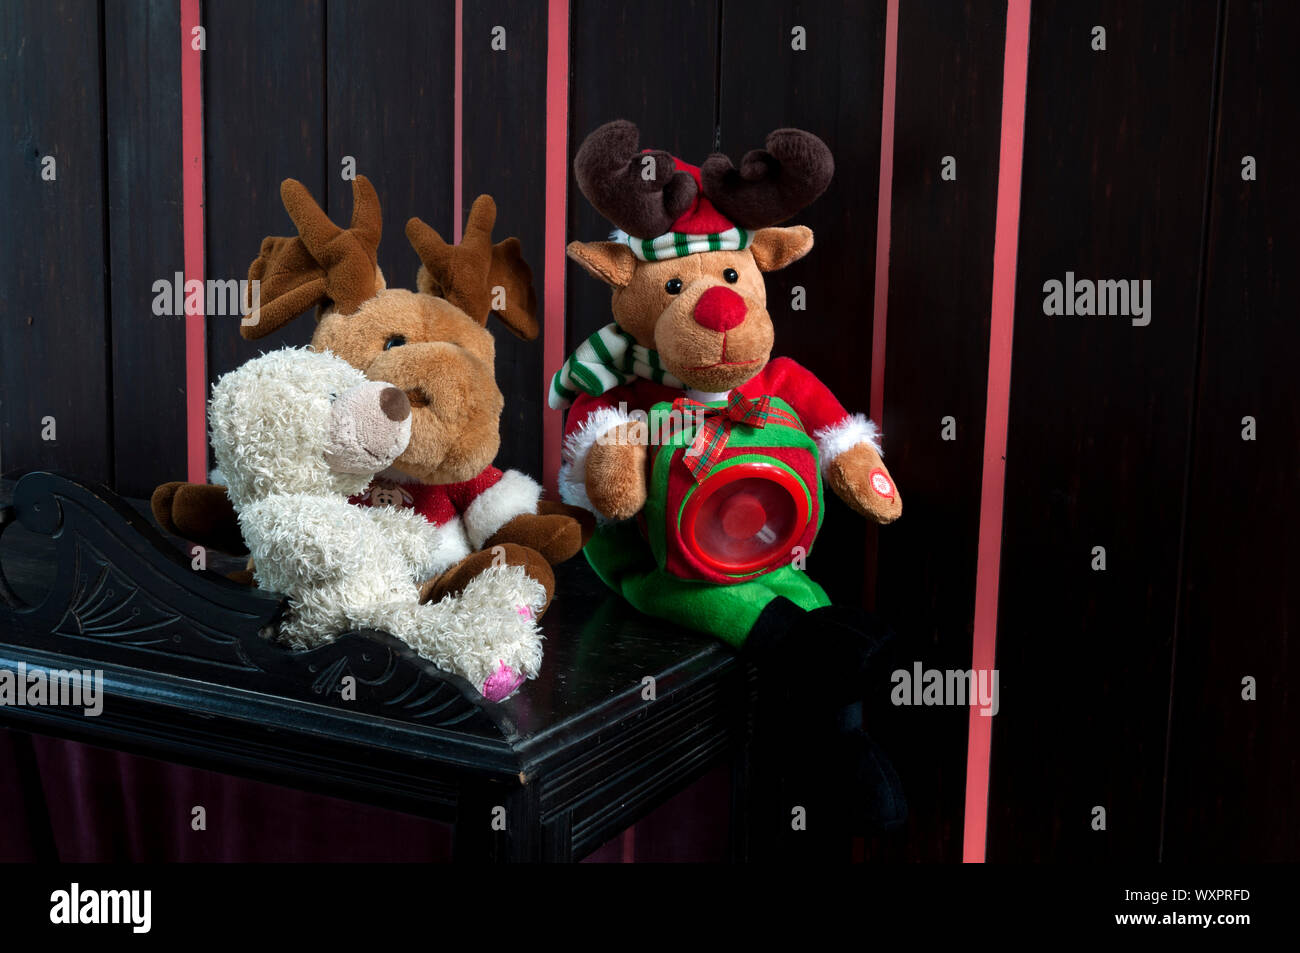 Christmassy jouets rembourrés à l'intérieur d'une église Banque D'Images